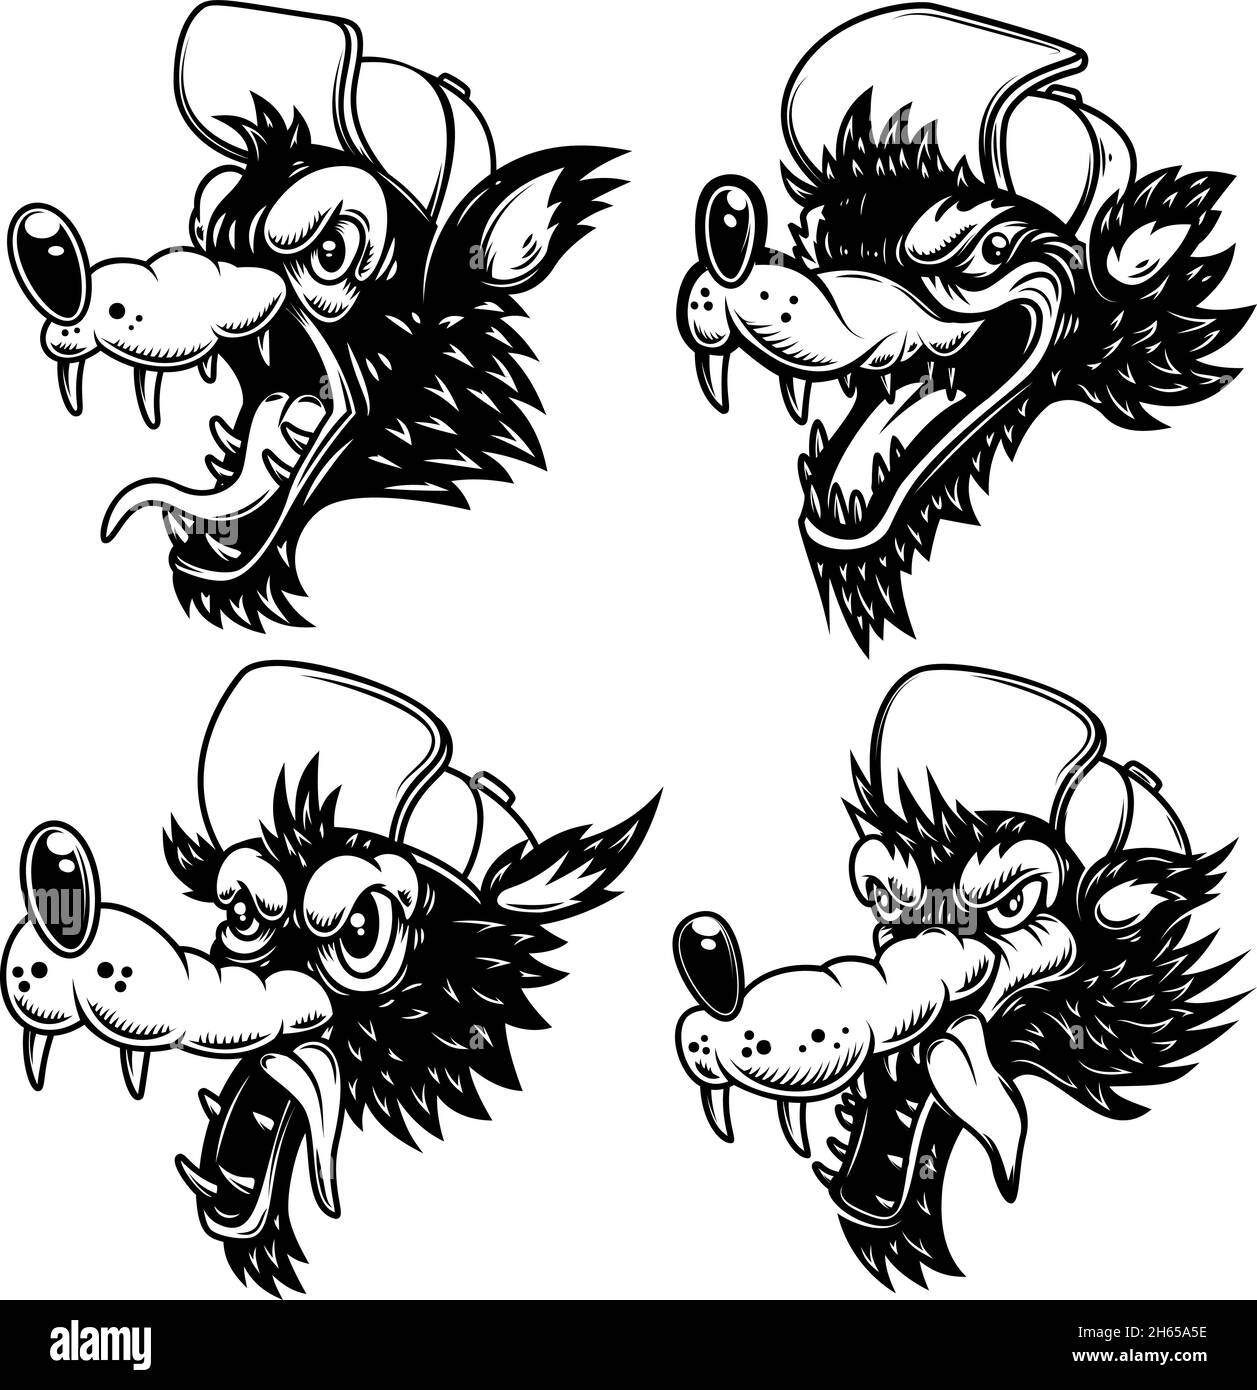 Set of illustrations of cartoon wolf in baseball hat. Design element for logo, label, sign, emblem, banner. Vector illustration Stock Vector Image & Art - Alamy